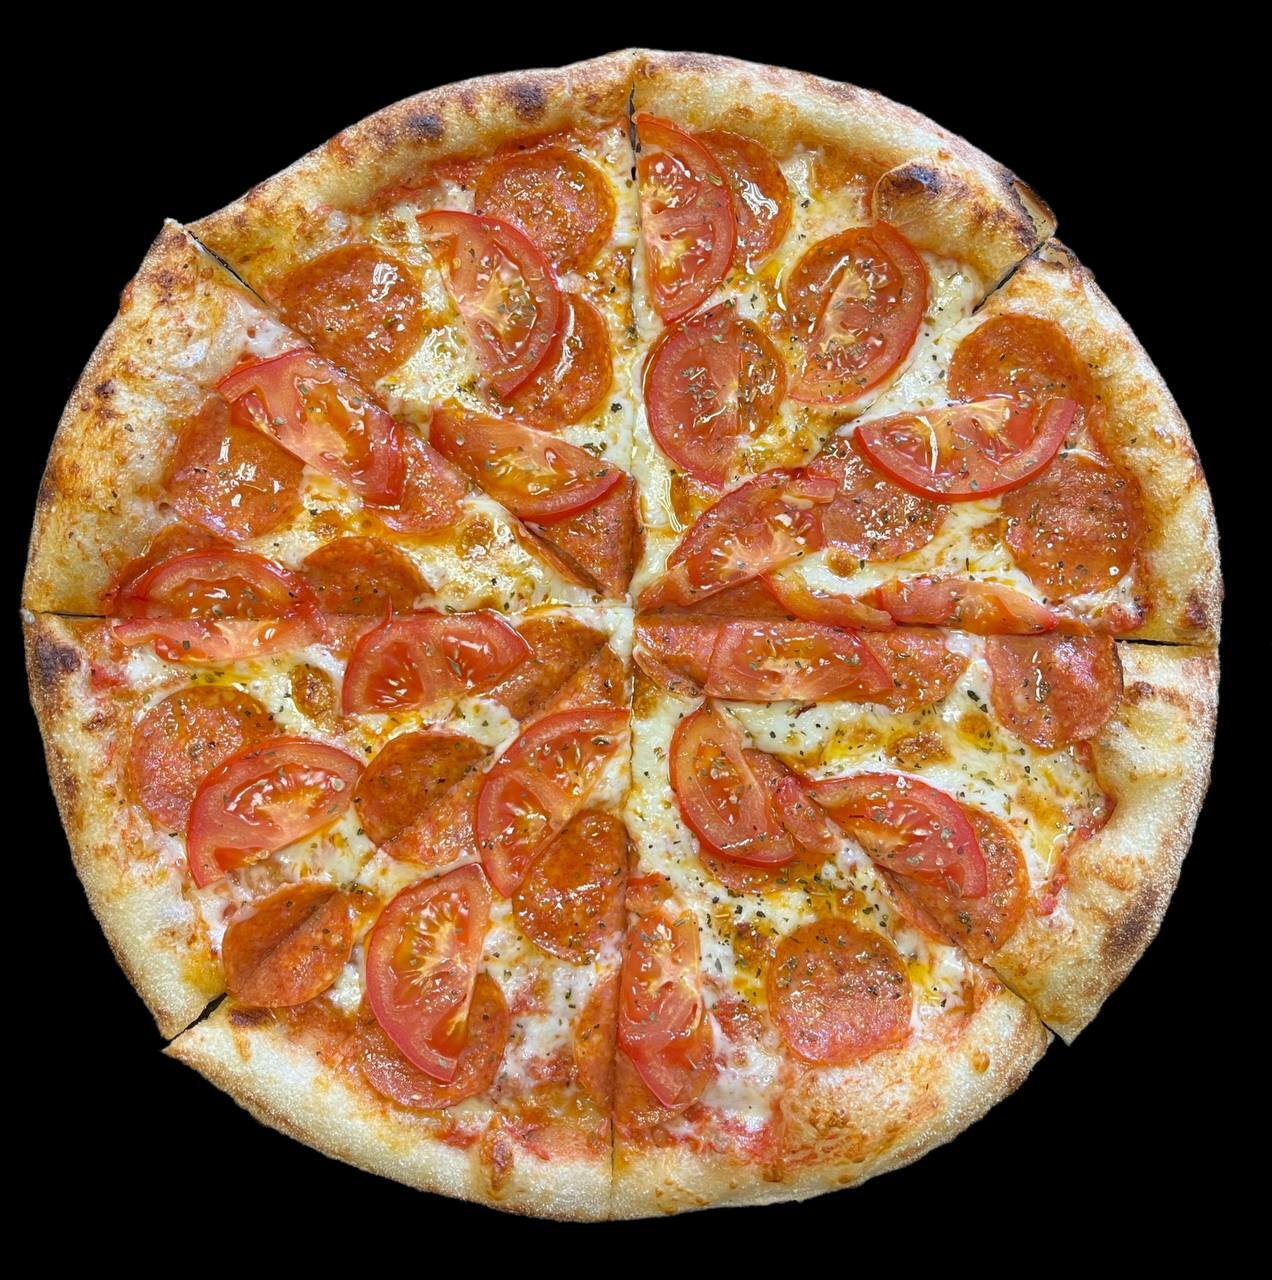 список продуктов для пиццы пепперони фото 83